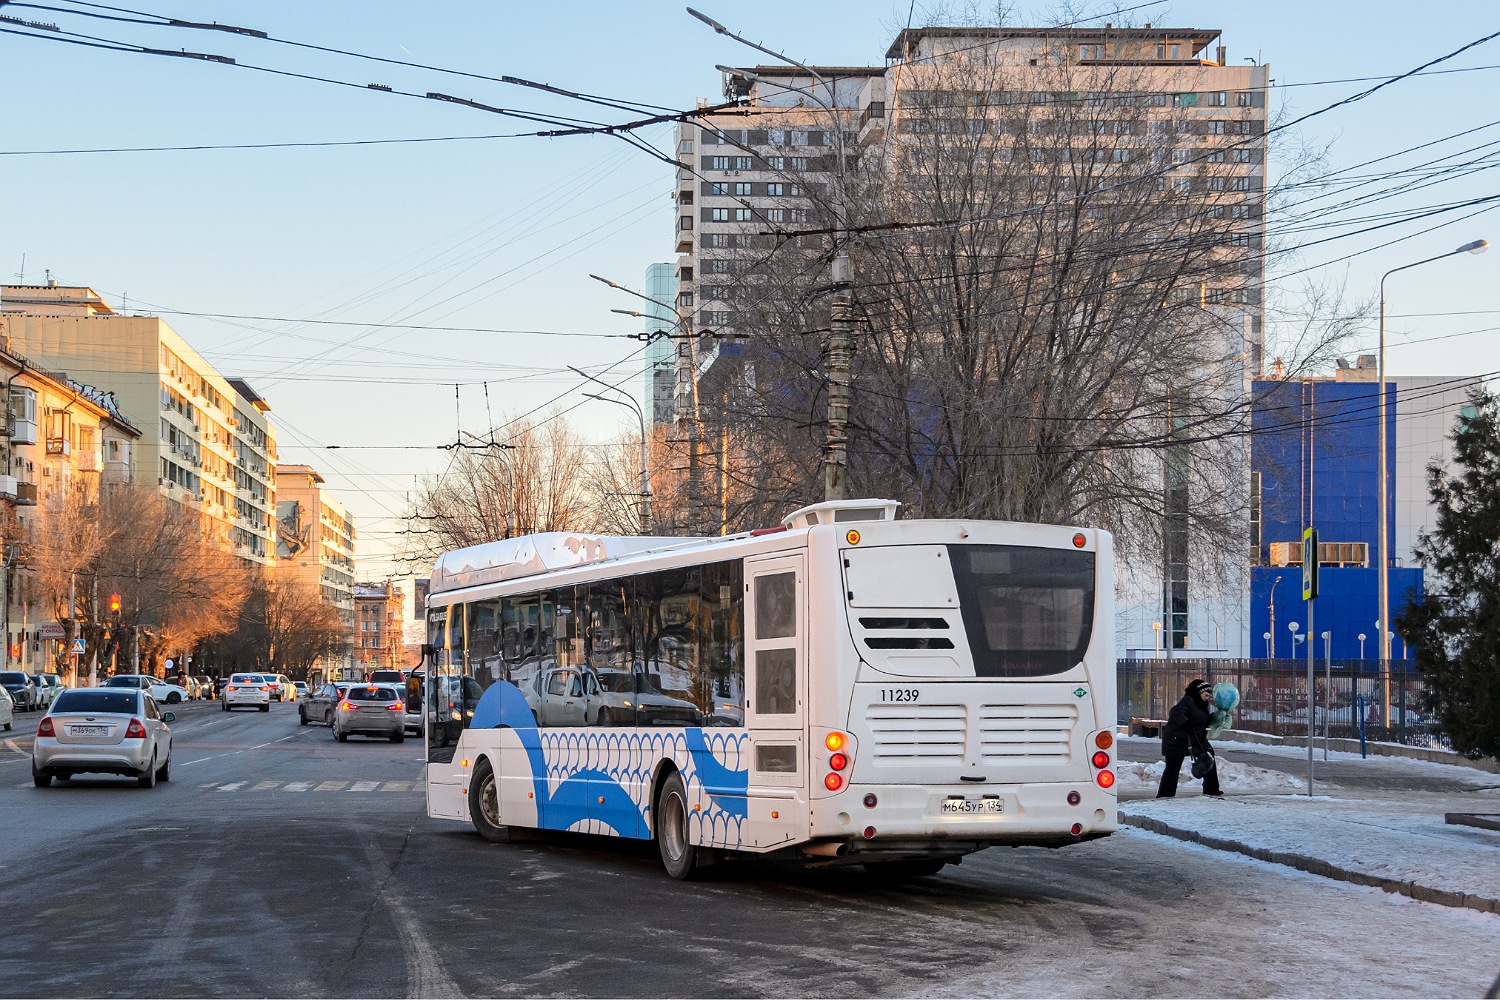 Volgograd region, Volgabus-5270.G4 (CNG) # 11239